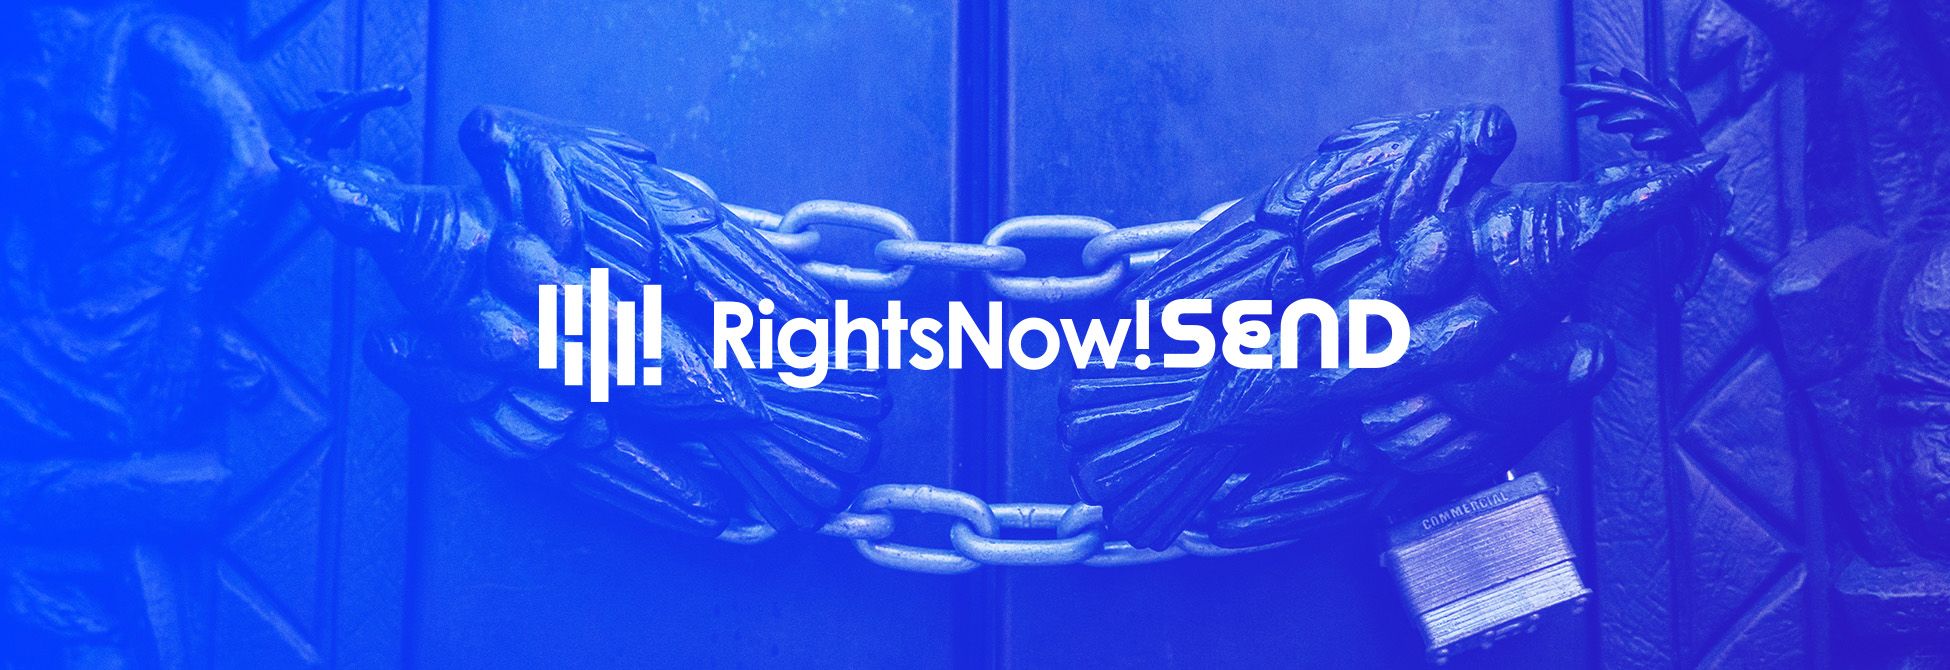 Protéger son oeuvre avec RightsNow!SEND gratuitement